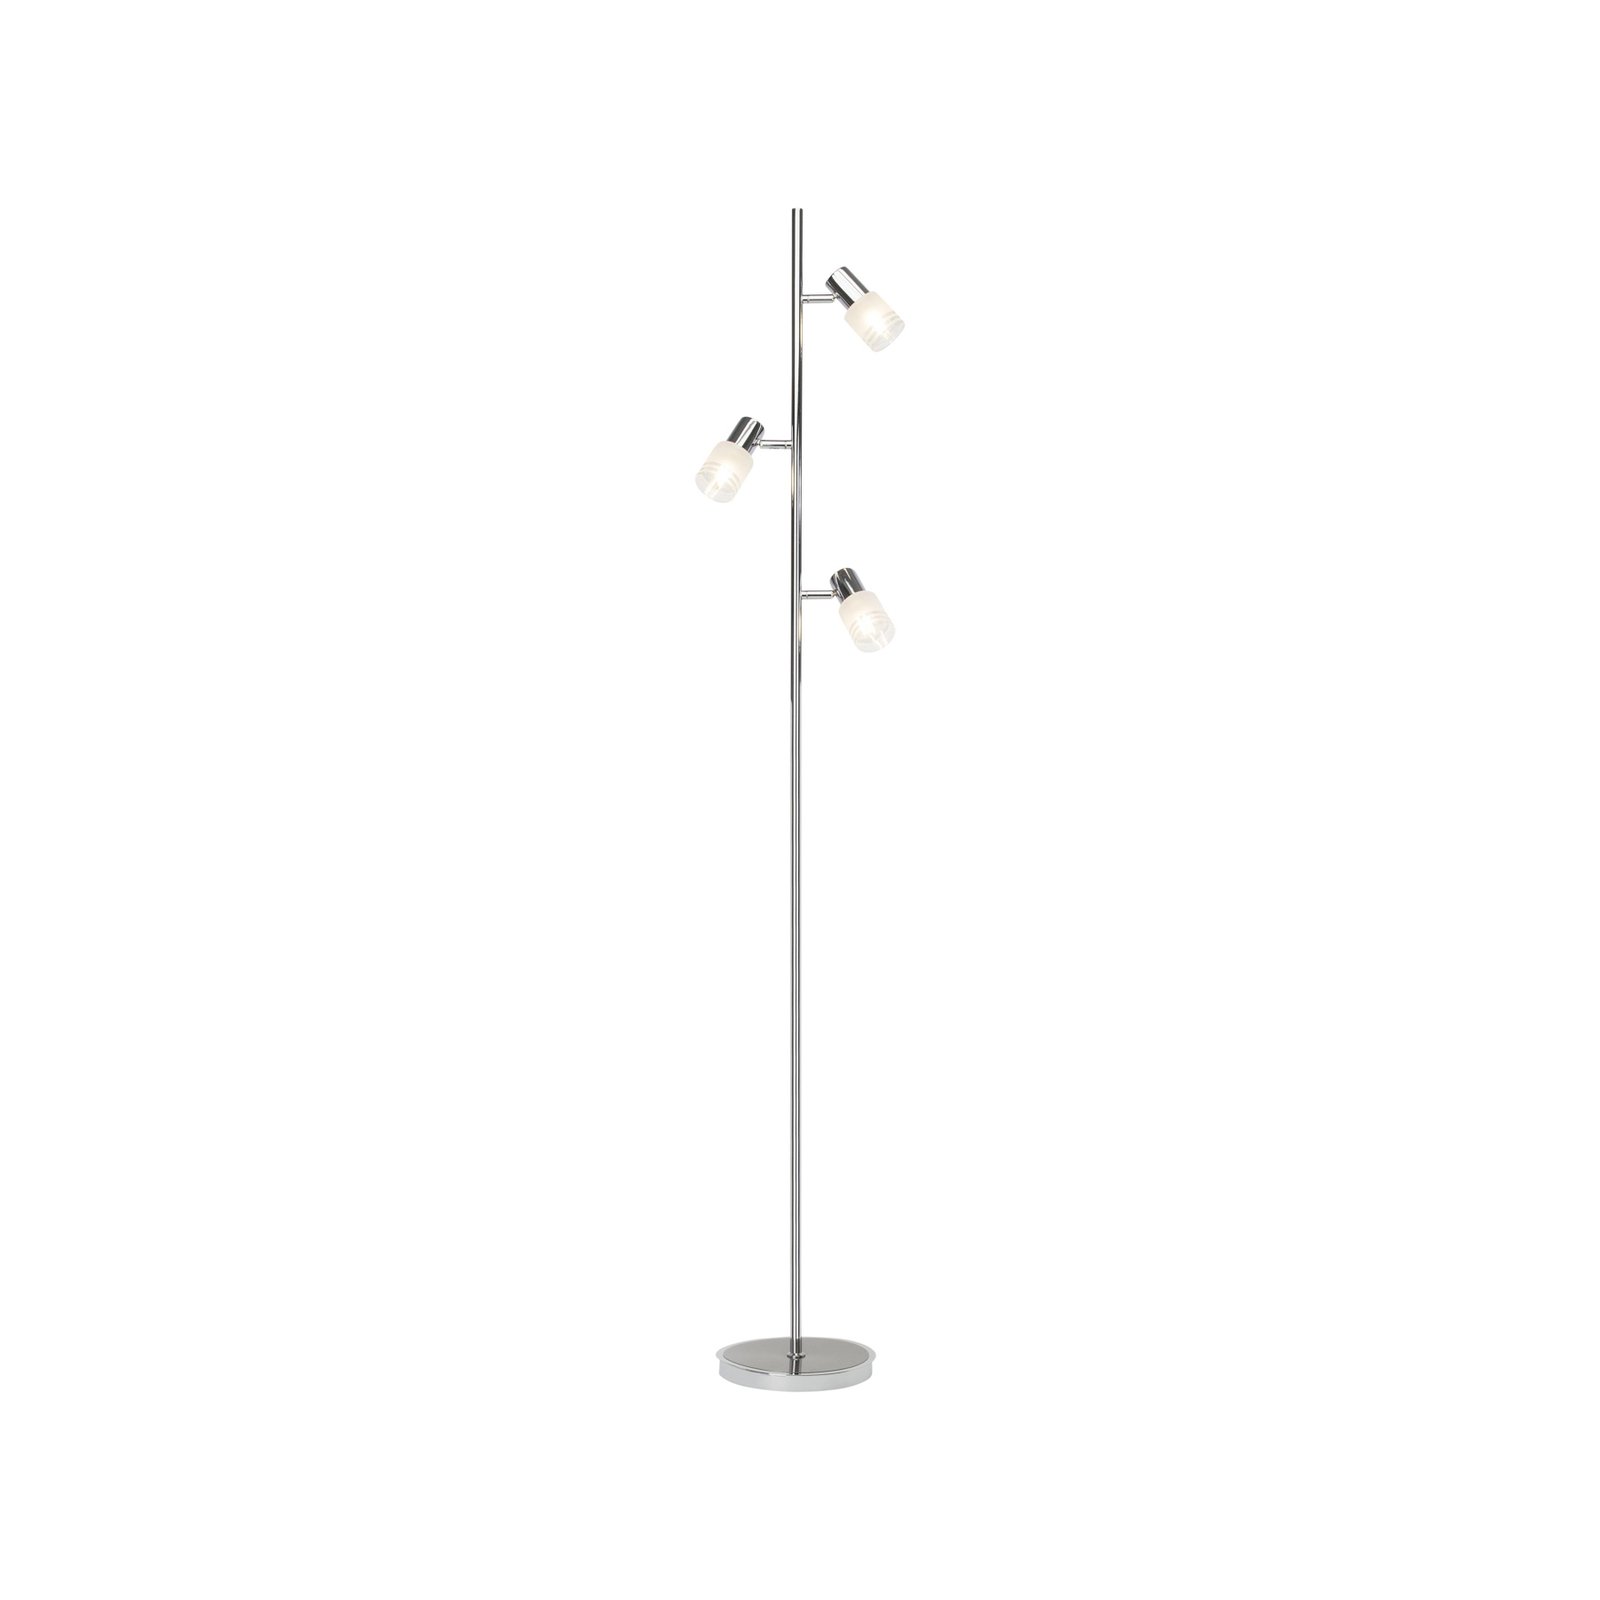 LED-gulvlampe Lea, høyde 157,5 cm, krom, 3 lys, metall